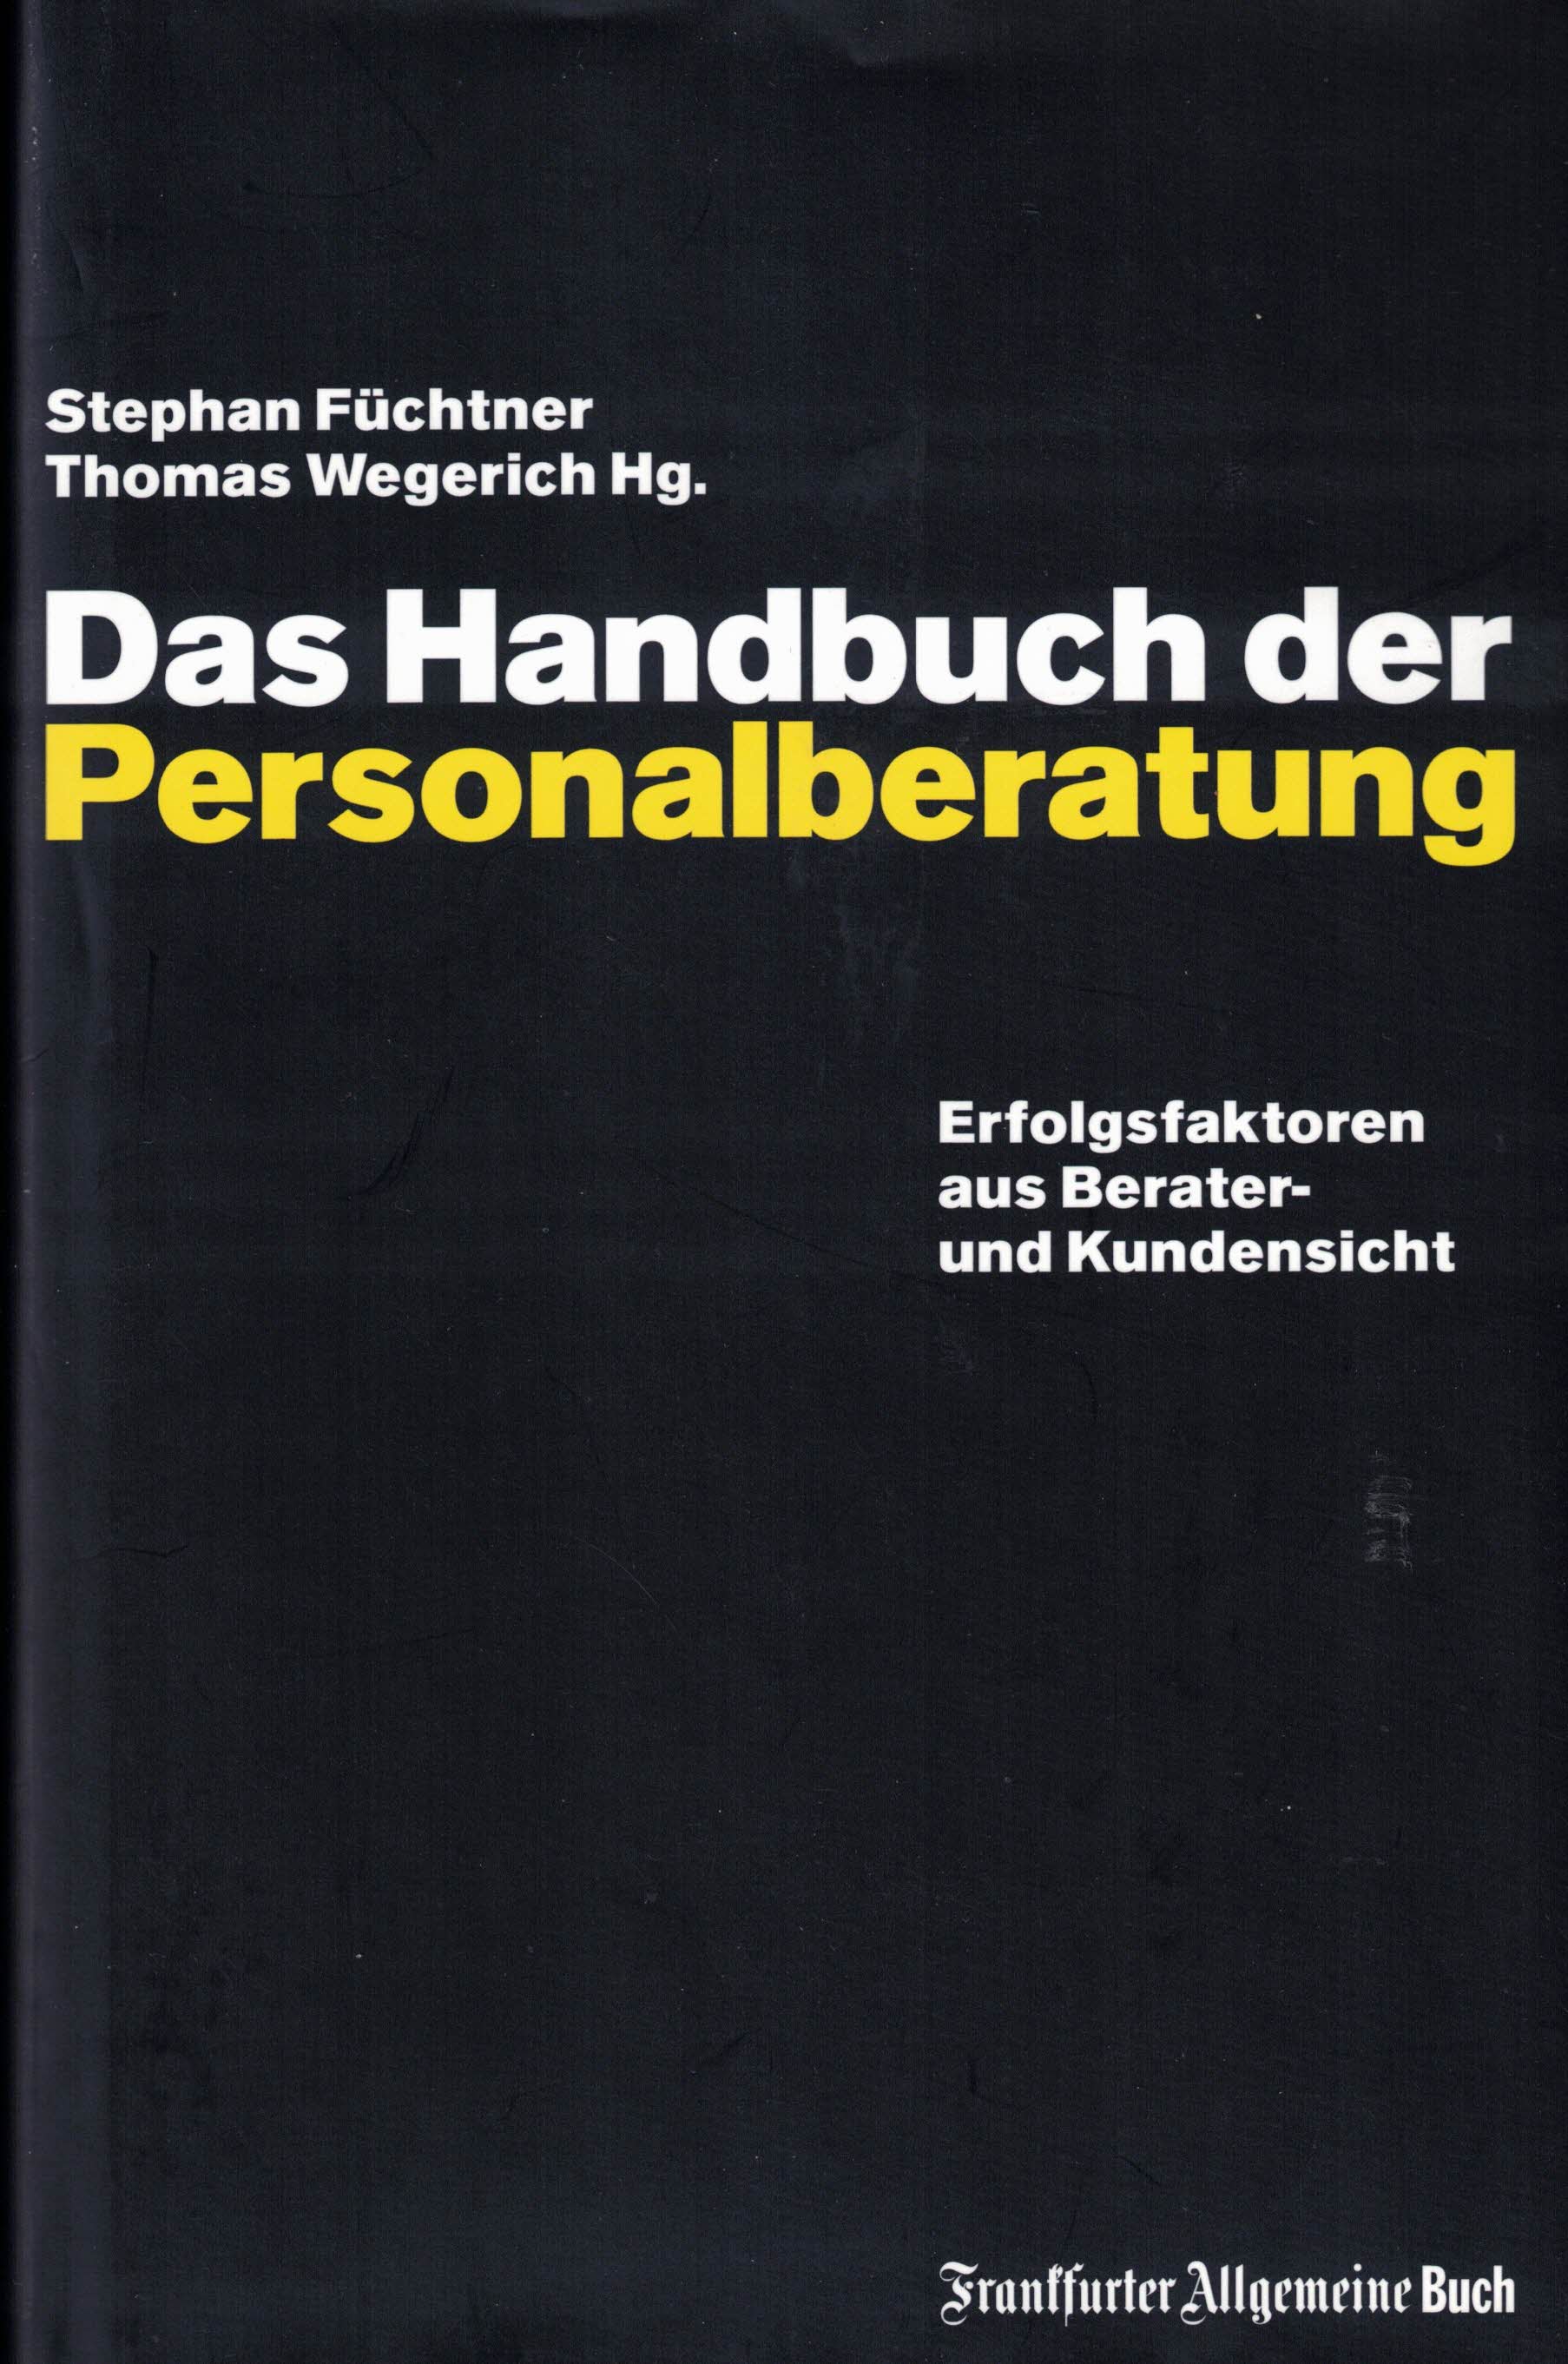 Das Handbuch der Personalberatung: Erfolgsfaktoren aus Berater- und Kundensicht - Füchtner, Stephan; Wegerich, Thomas